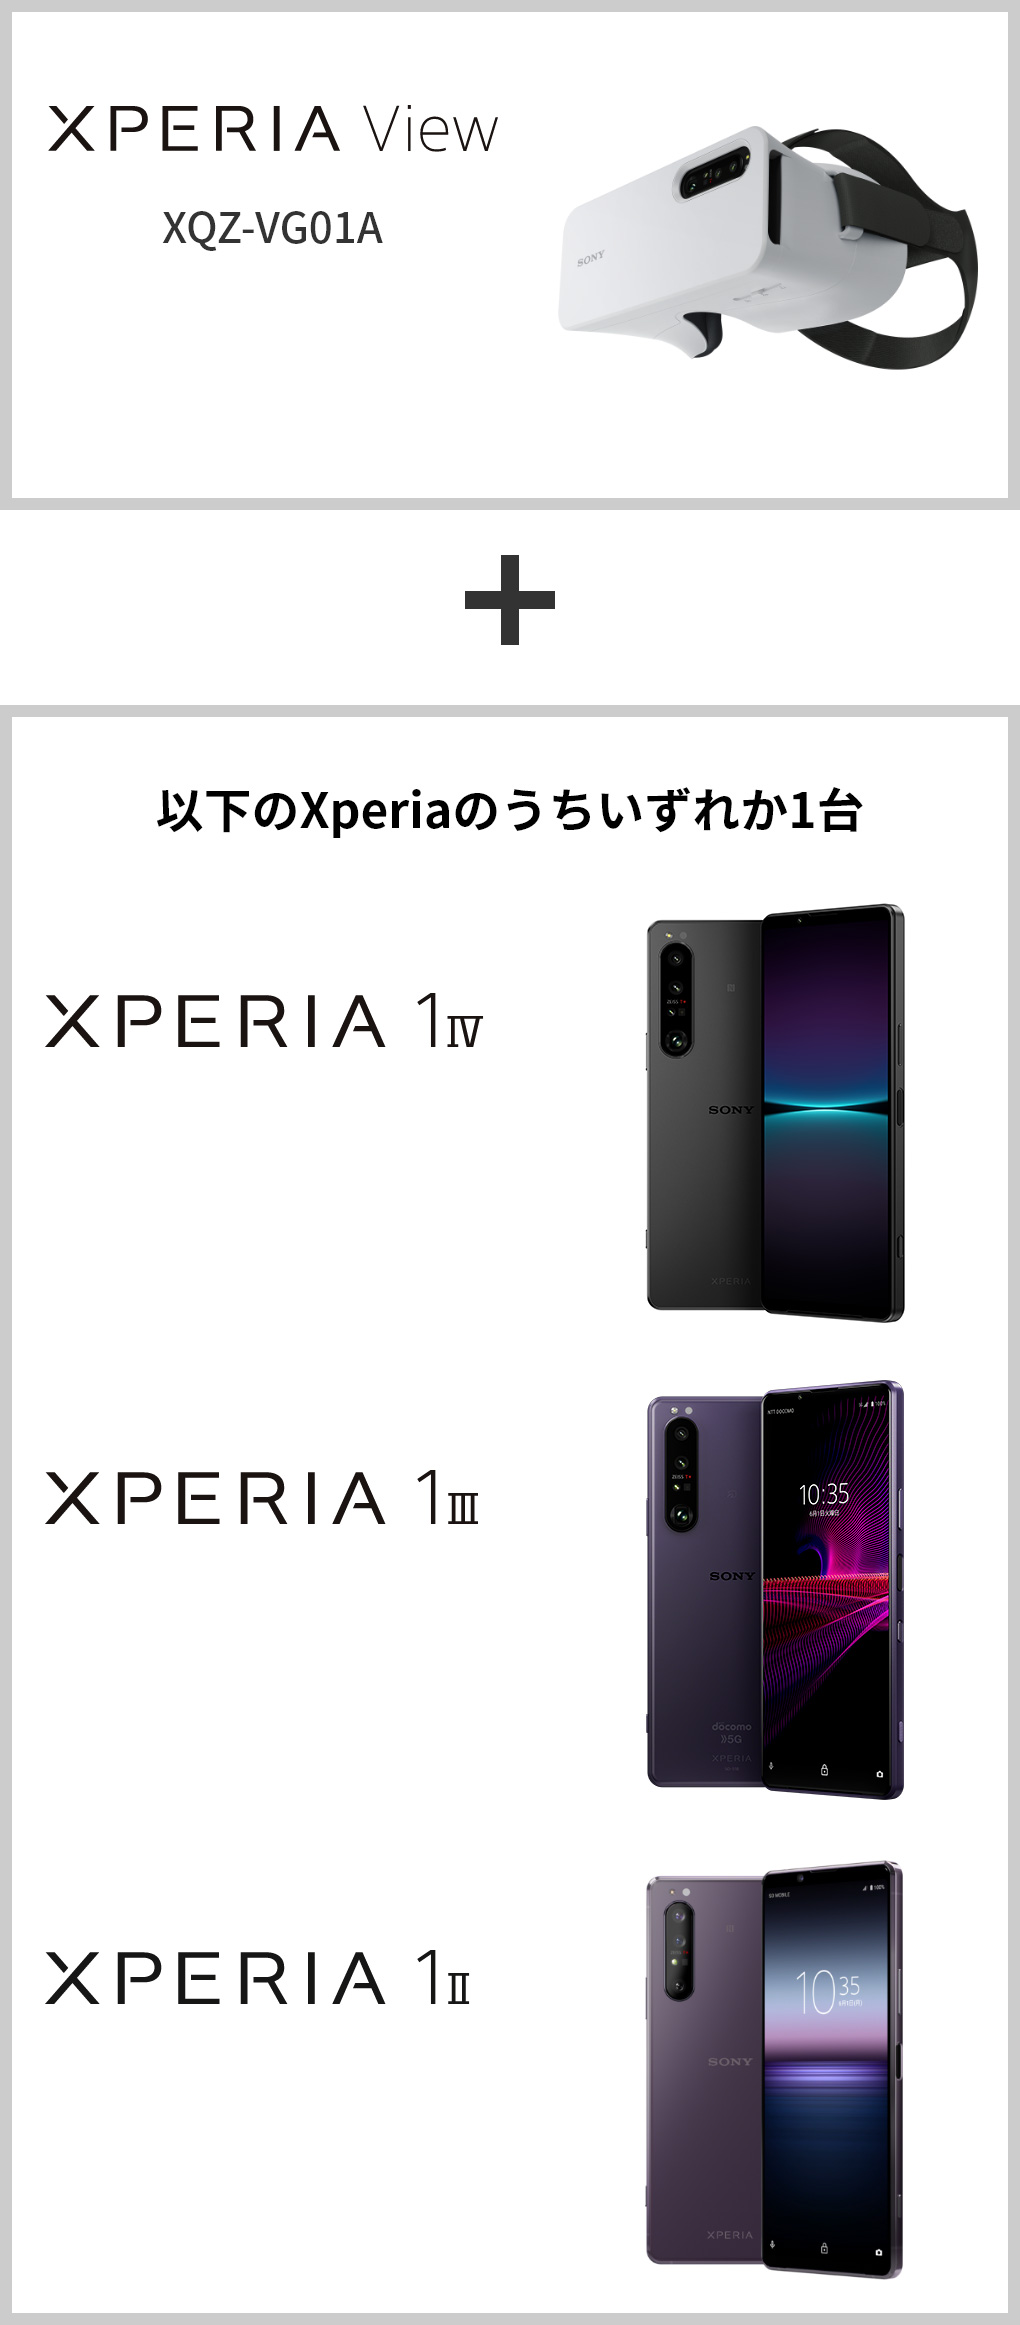 Xperia View(XQZ-VG01A) + 以下のXperiaのうちいずれか1台 Xperia 1 IV / Xperia 1 III / Xperia 1 II